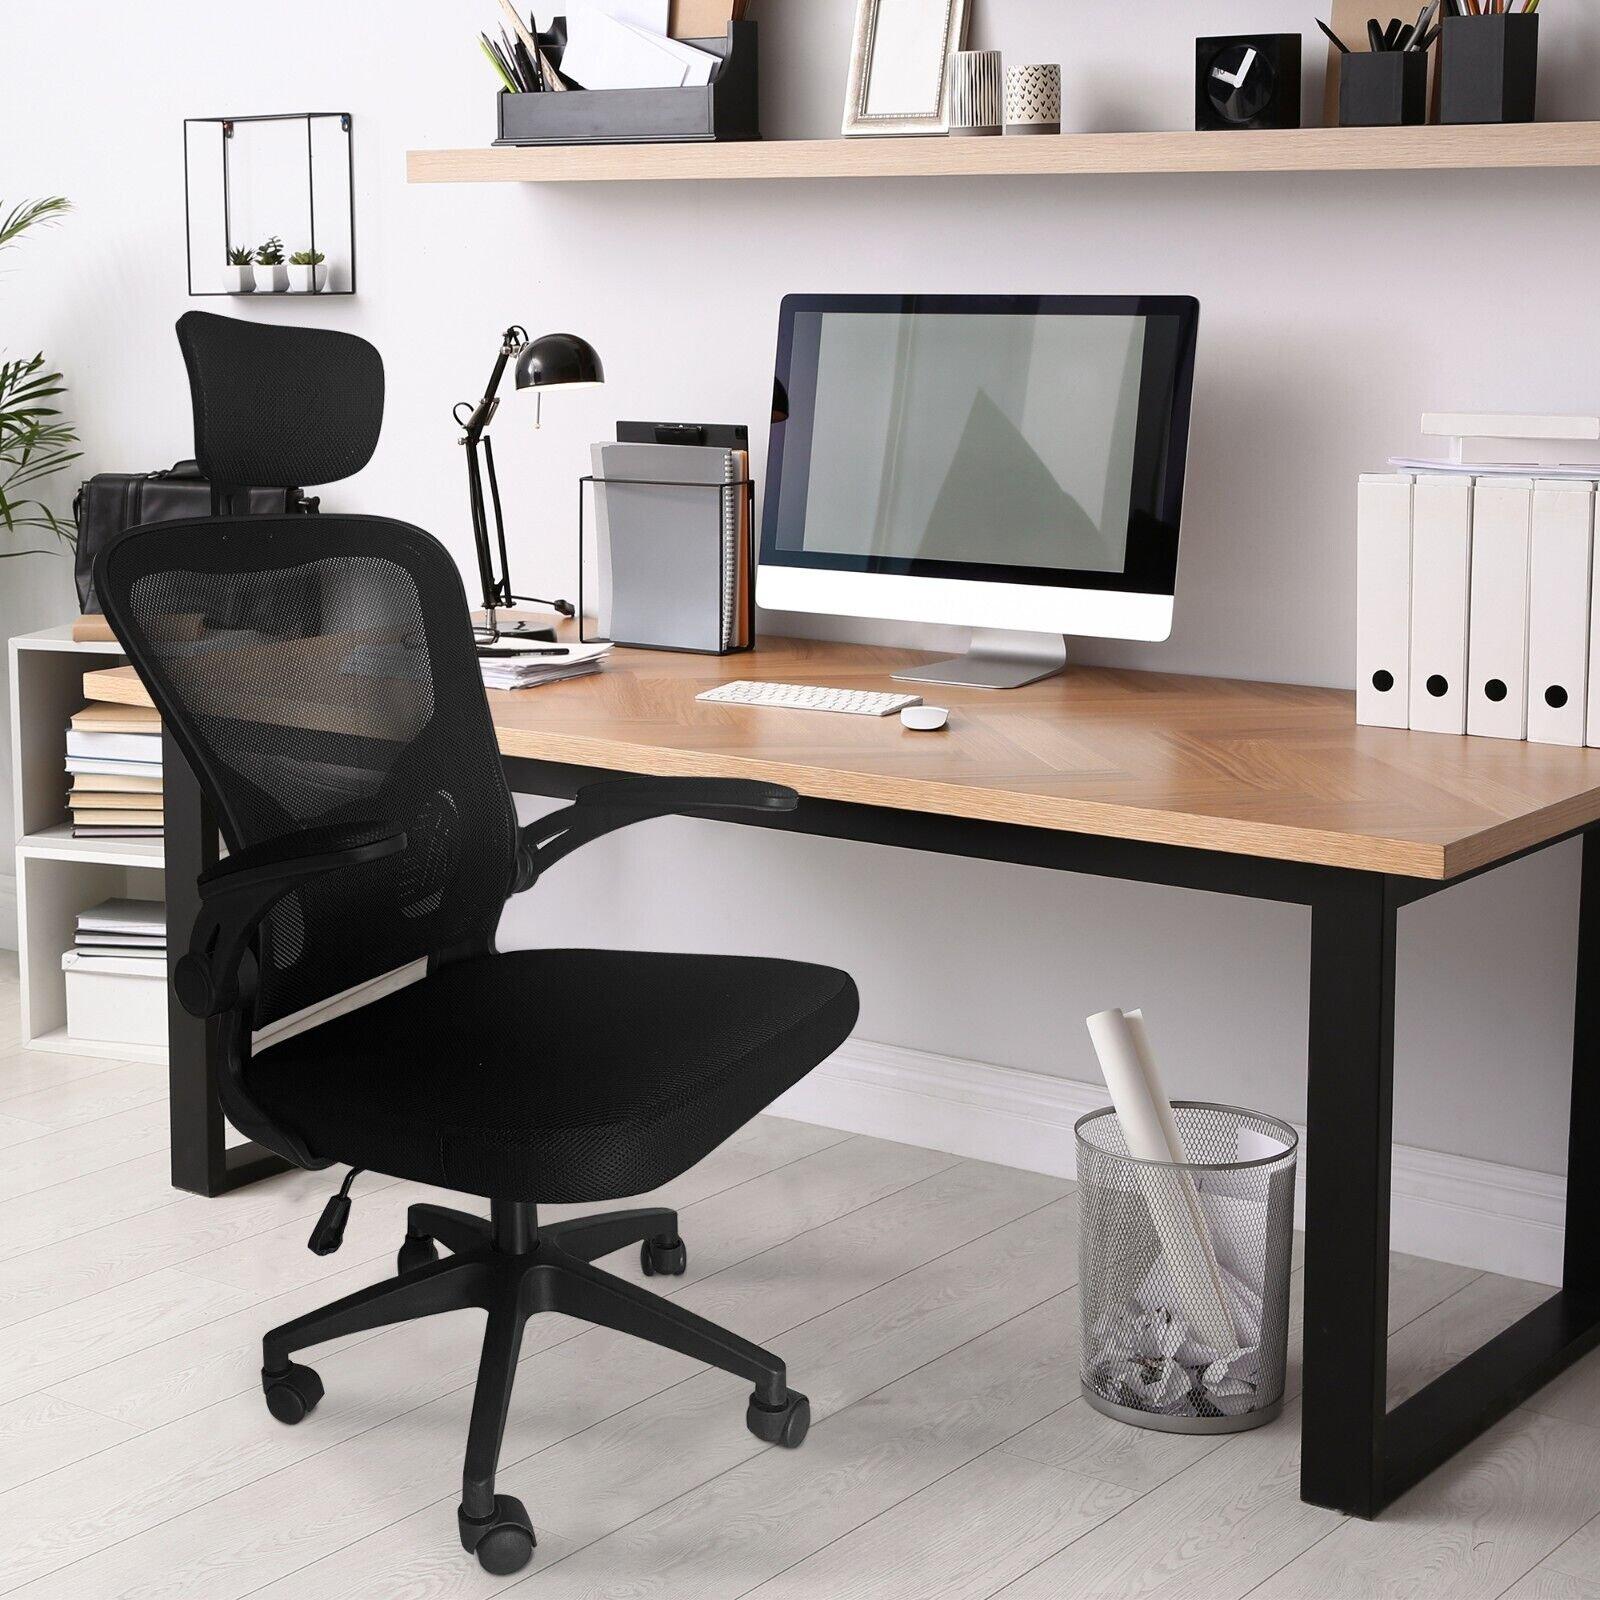 Ergonomic High Back Office Chair With Headrest Lumbar Support & Flip-UP Armrest